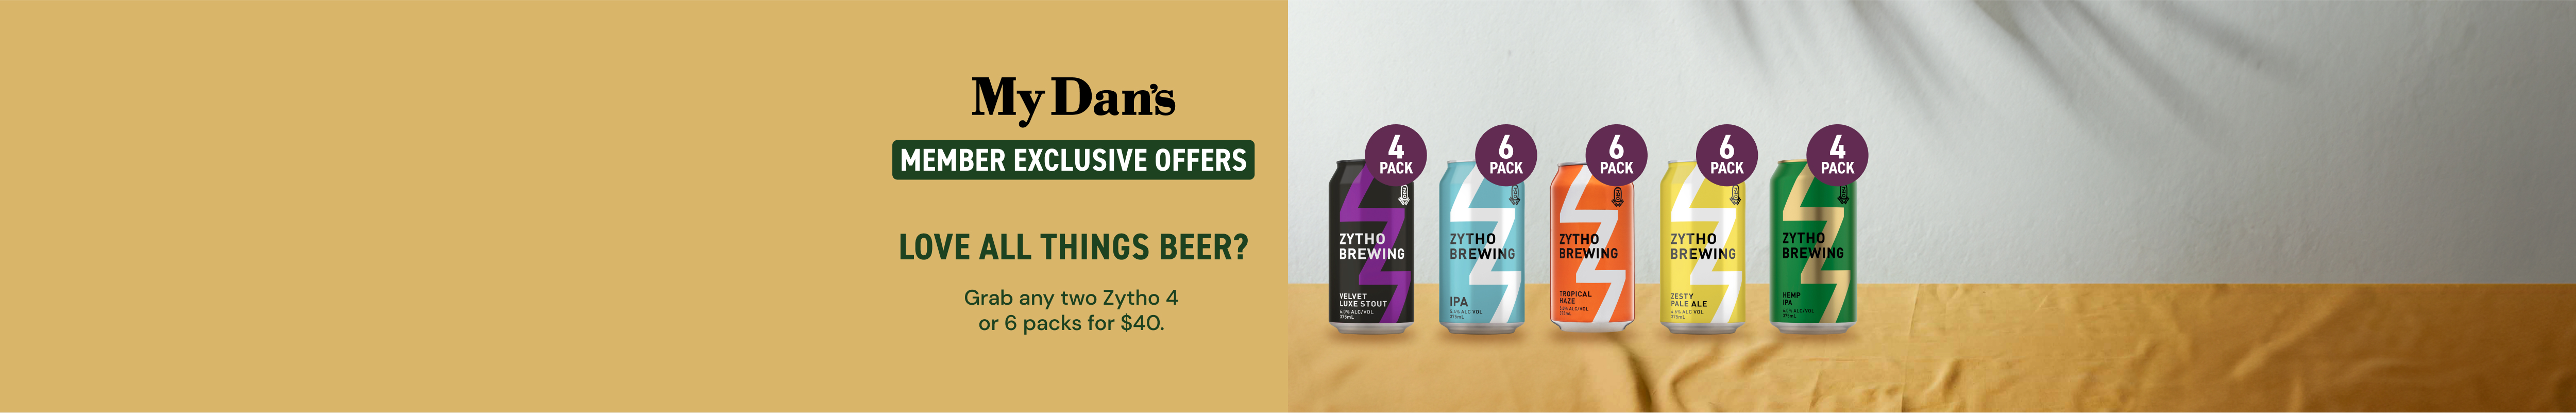 Buy Any 2 Zytho Beer (Pack of 4 or 6) at $40 (Member Exclusive) - Dan ...